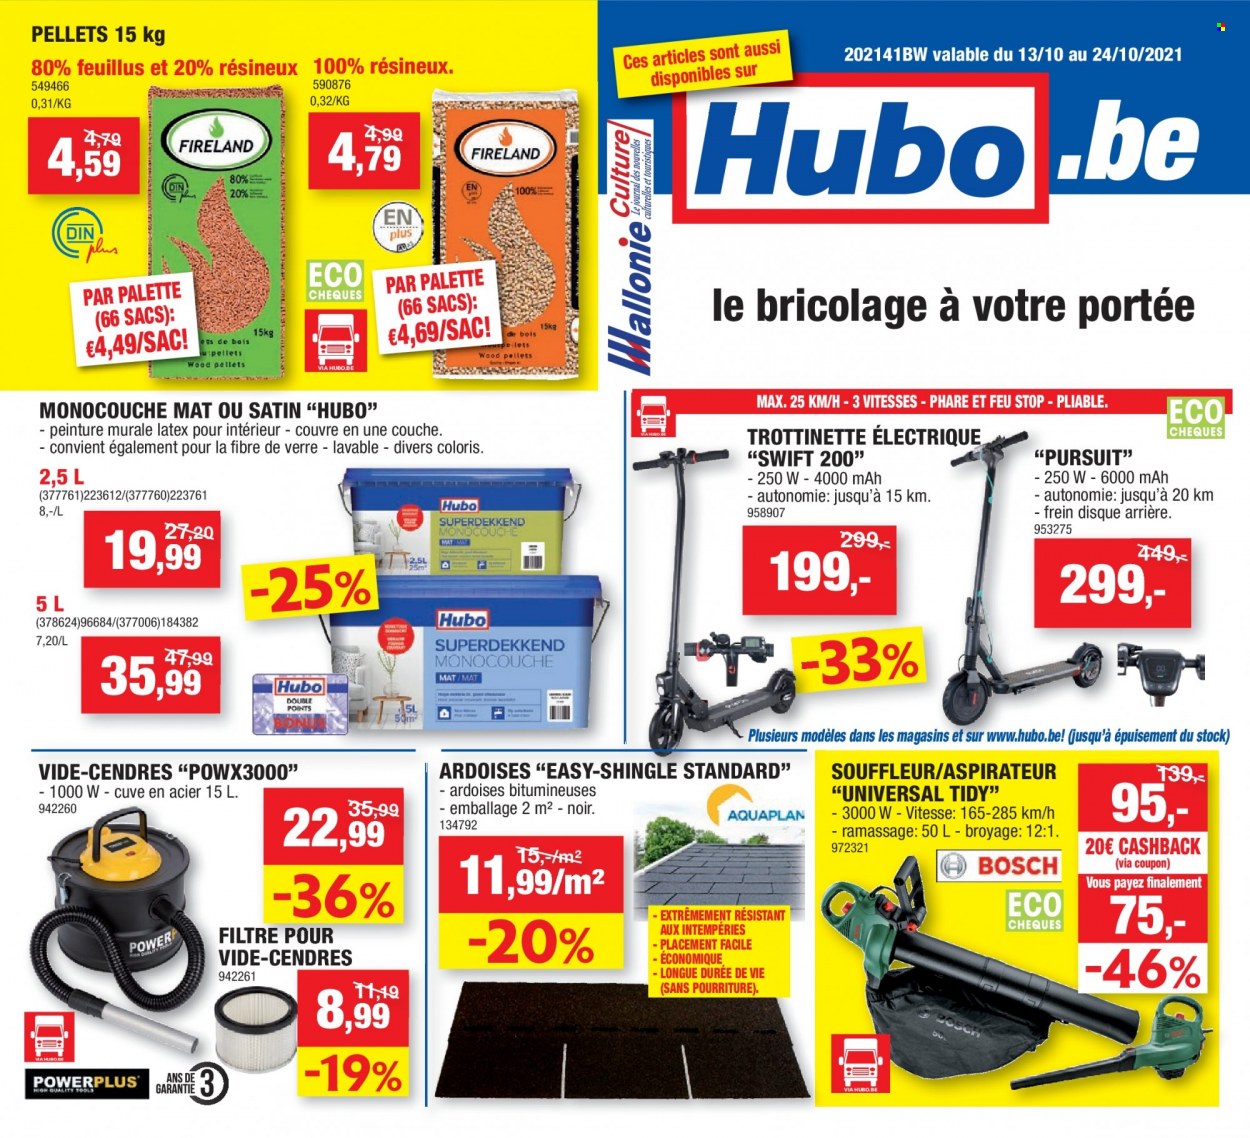 thumbnail - Catalogue Hubo - 13/10/2021 - 24/10/2021 - Produits soldés - aspirateur, trottinette, trottinette électrique, sac. Page 1.